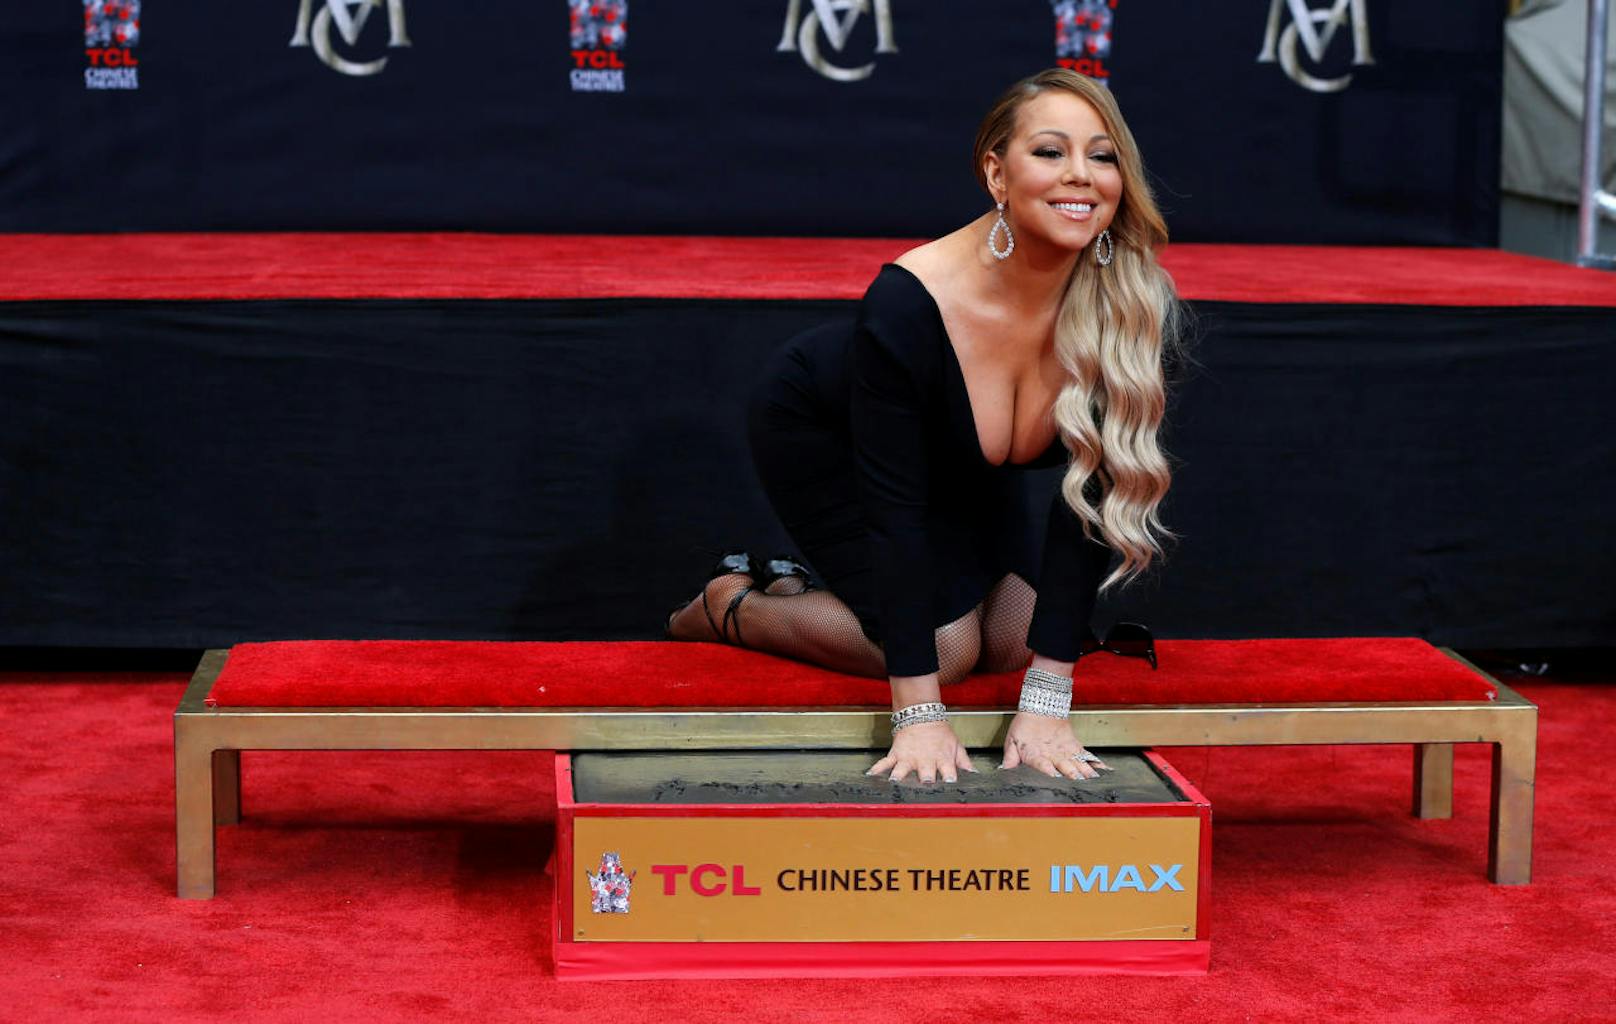 Große Klunker, tiefer Ausschnitt: So kennt die Welt Mariah Carey, die hier ihre Handabdrücke in Beton vor dem Chinese Theatre hinterlässt.